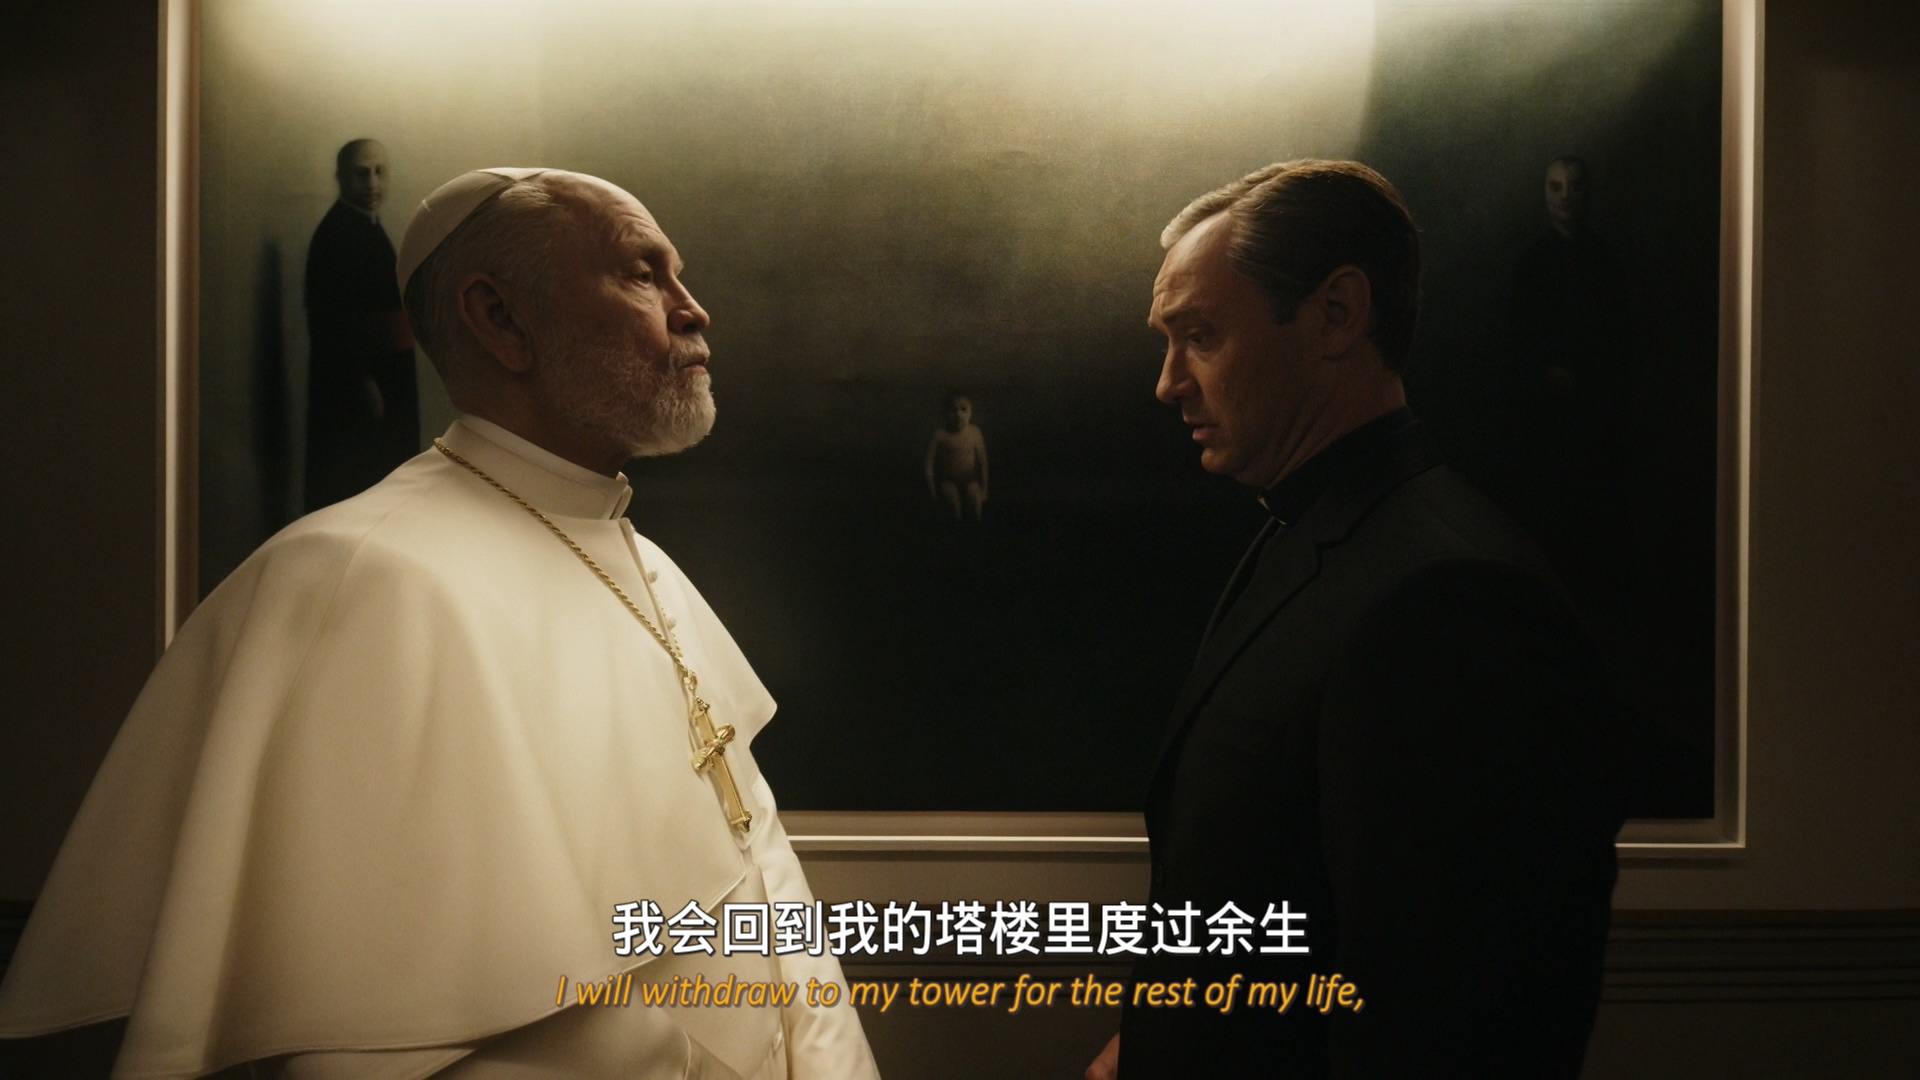 [新教宗/年轻的教宗续集/新教皇/新生教宗][DIY简繁&双语字幕 ]The New Pope S01 1080i FRA Blu-ray AVC DTS-HD MA 5.1-Hlbe [116.25 GB]-2.jpg